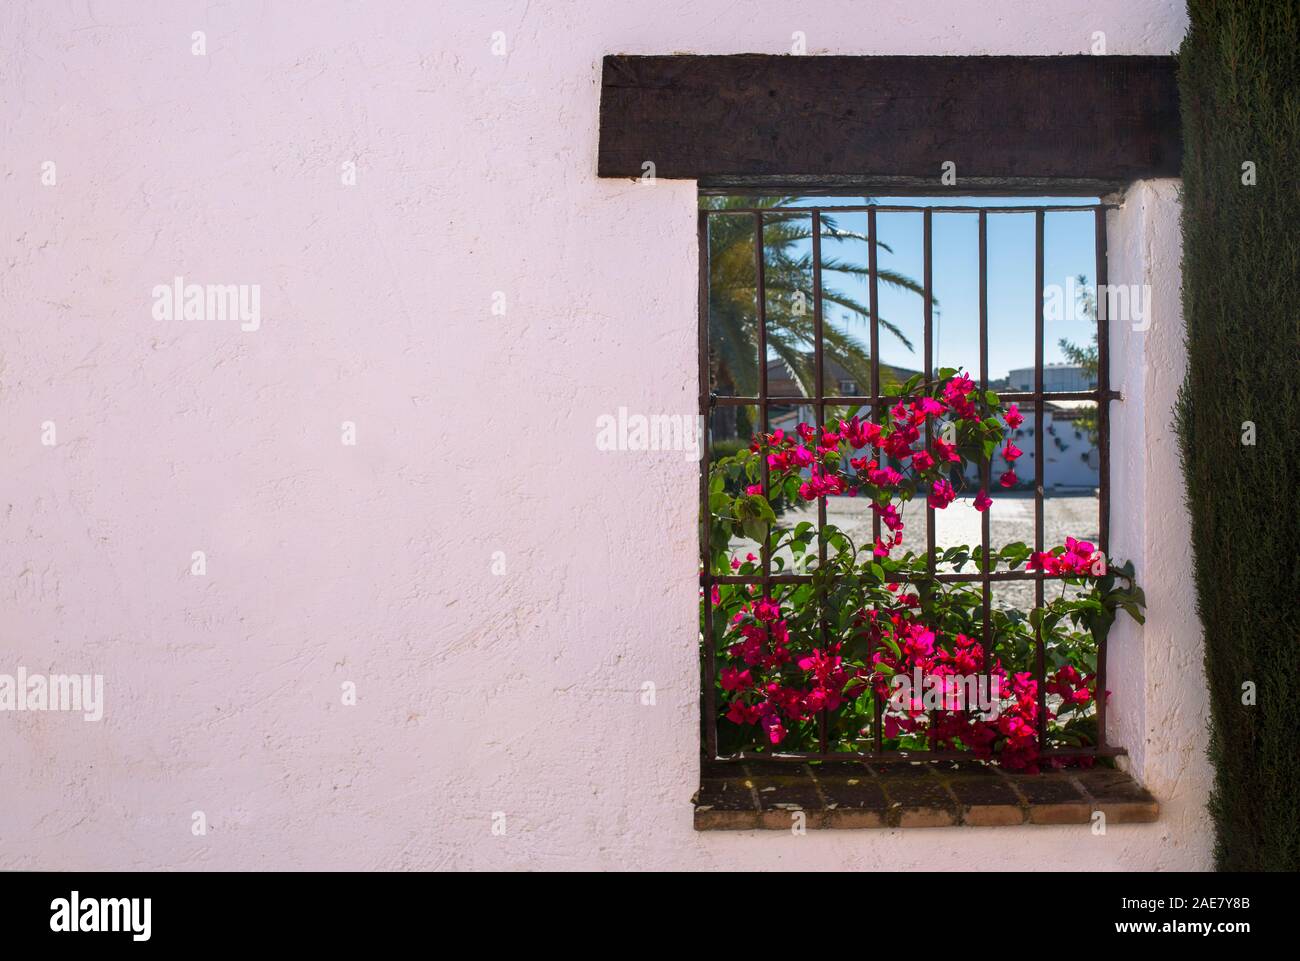 Traditionelle andalusische Architektur mit weiß getünchten Wänden und Fenstern voller Blumen. Fuente Palmera, Cordoba, Spanien Stockfoto